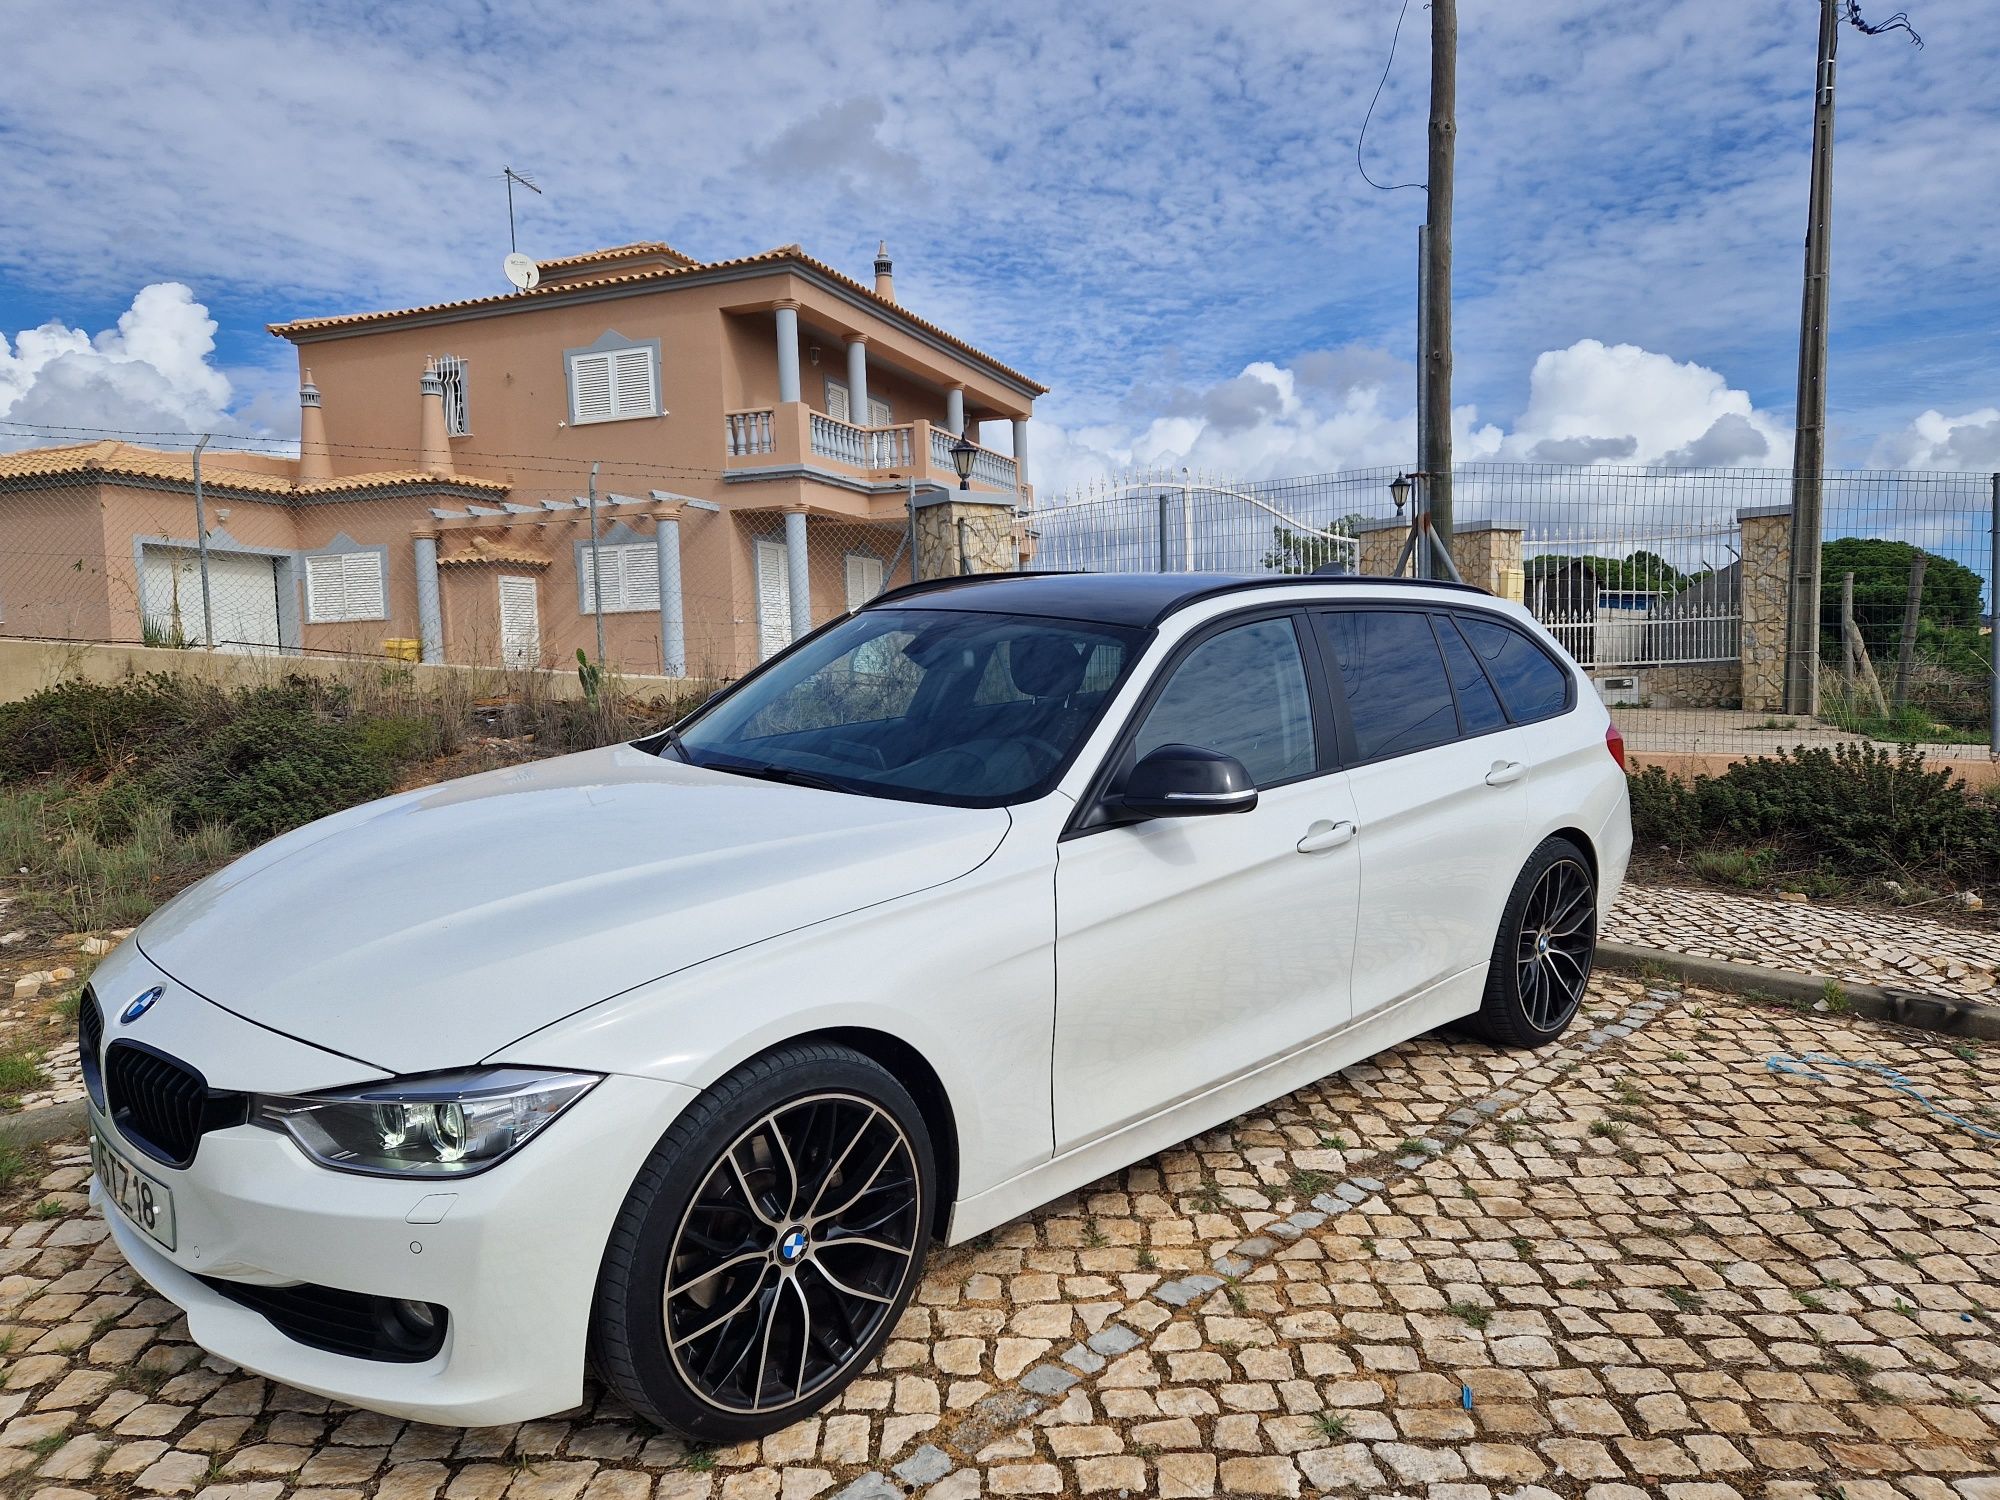 Financiamento - BMW em Campanhã - OLX Portugal